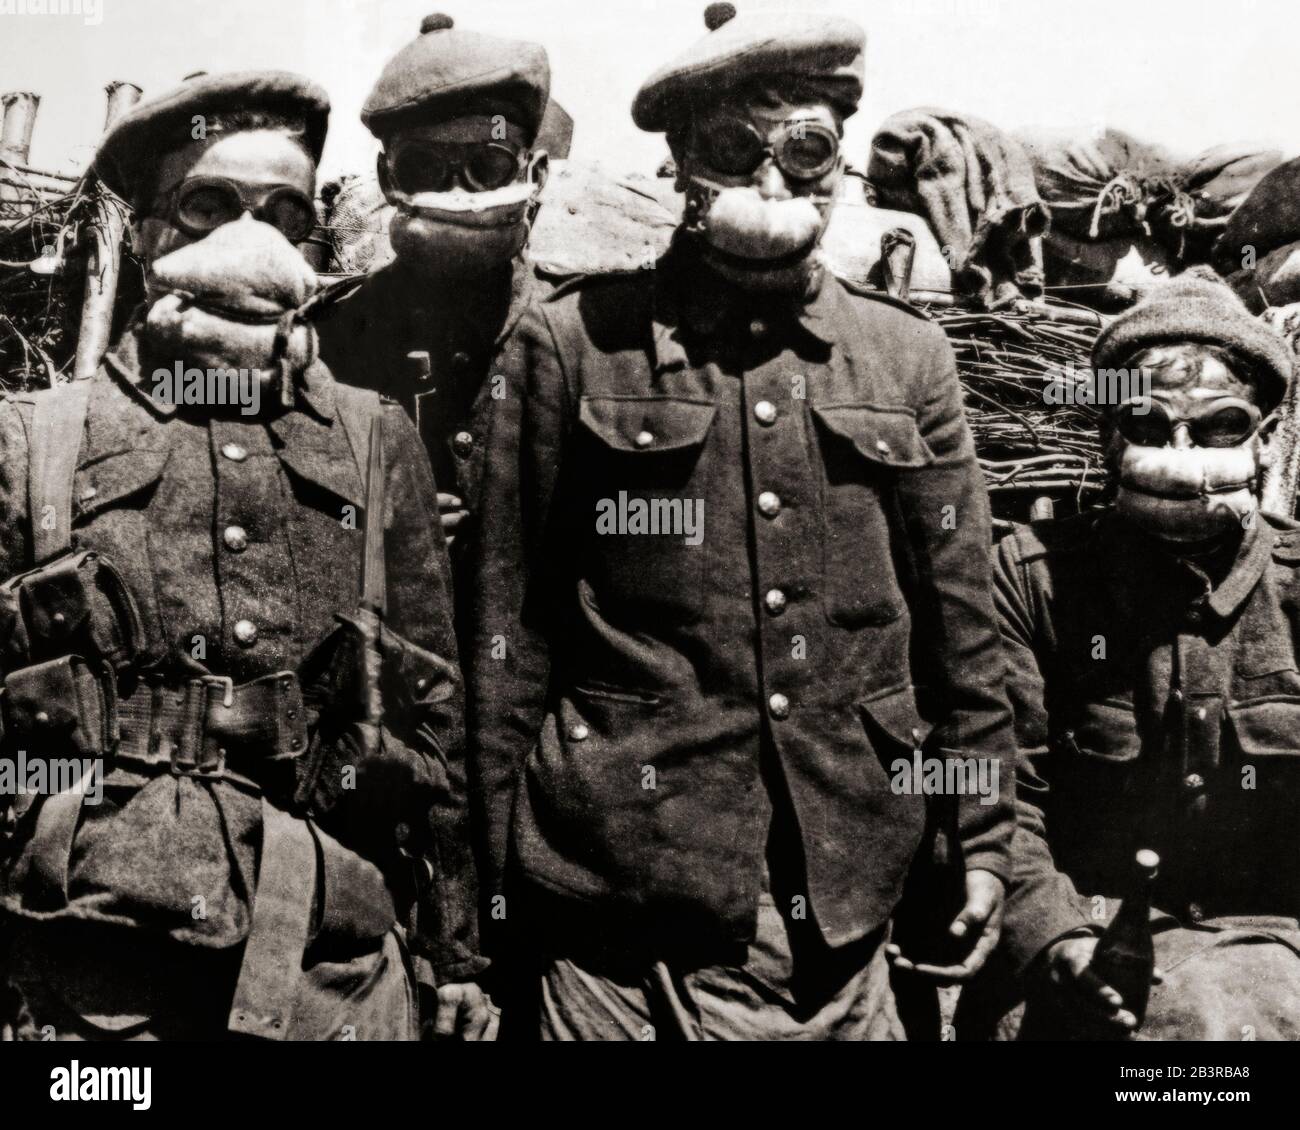 Uomini di Argyll e Sutherland Highlanders indossando primi respiratori a cuscino. La Prima guerra mondiale ha portato alla prima necessità di maschere a gas prodotte in serie su entrambi i lati a causa dell'uso estensivo di armi chimiche. L'esercito tedesco ha utilizzato gas velenoso per la prima volta contro le truppe alleate nella Seconda battaglia di Ypres, in Belgio, il 22 aprile 1915. Come risposta immediata fu la lana di cotone avvolta in mussola emessa alle truppe entro il 1° maggio. Questo è stato seguito dal respiratore nero Veil, un batuffolo di cotone imbevuto in una soluzione assorbente che è stata fissata sulla bocca usando velatura di cotone nero. Foto Stock